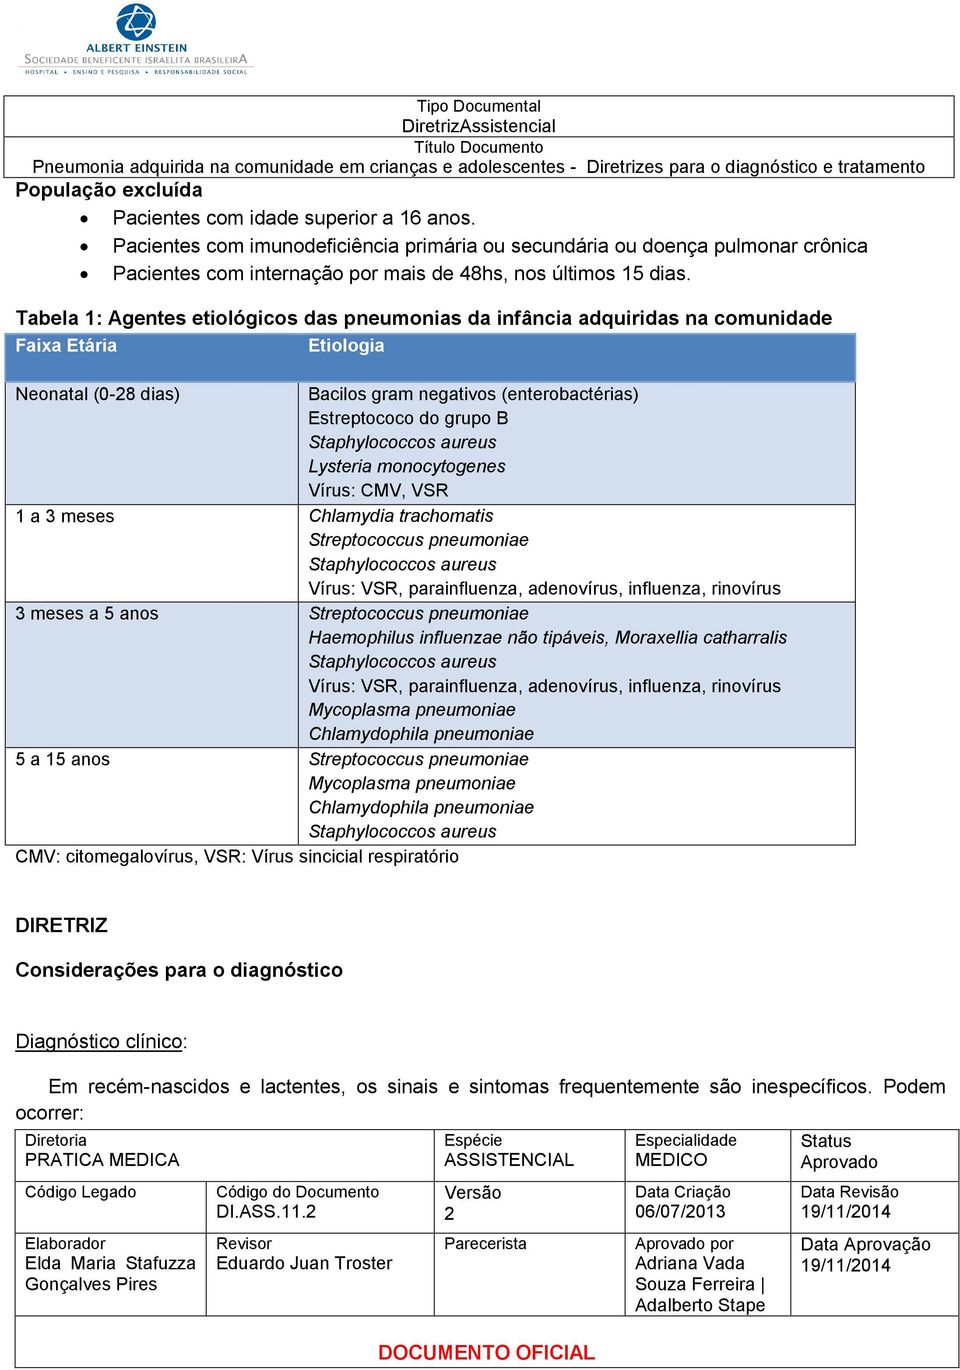 Tabela 1: Agentes etiológicos das pneumonias da infância adquiridas na comunidade Faixa Etária Etiologia Neonatal (0-8 dias) Bacilos gram negativos (enterobactérias) Estreptococo do grupo B